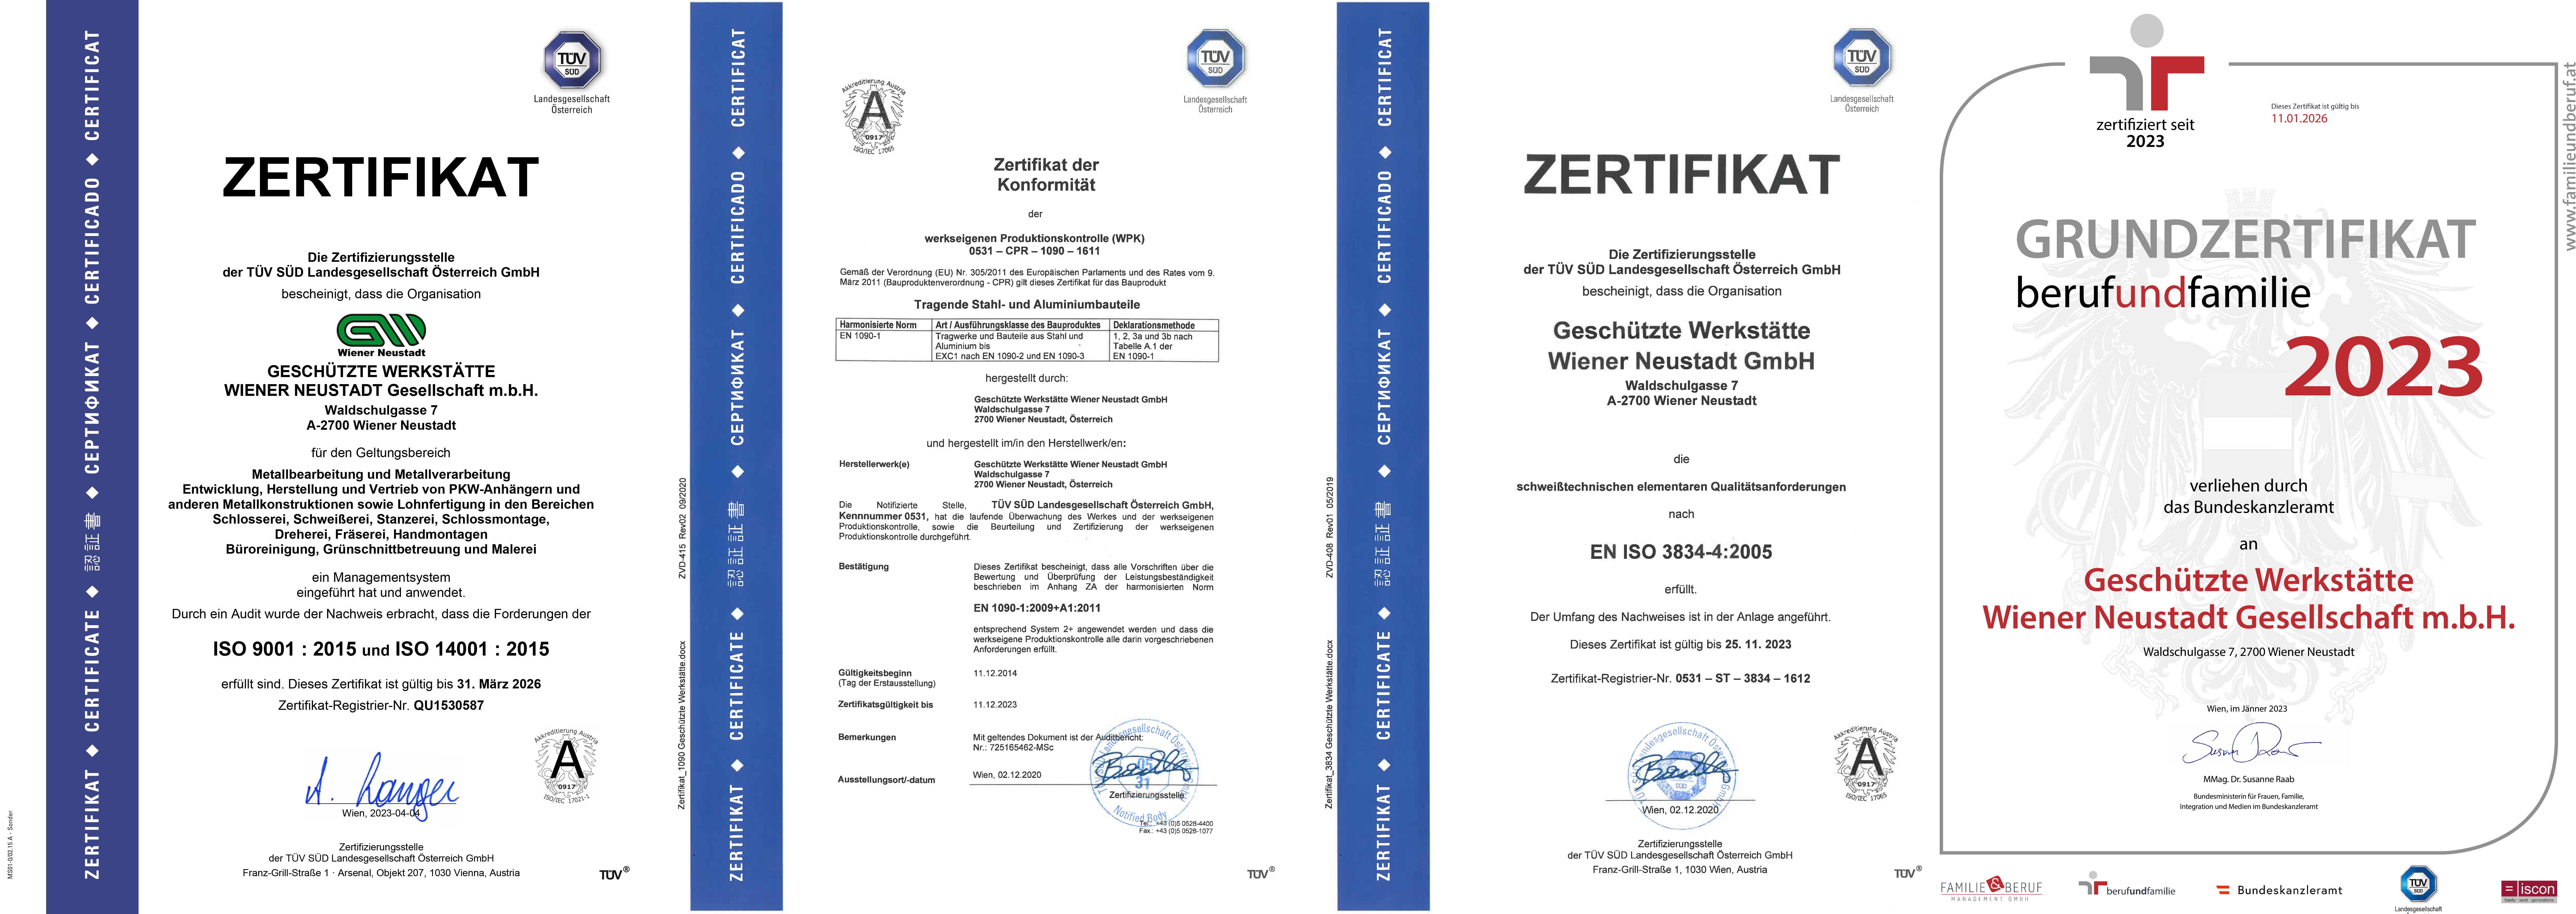 Die Zertifizierungen der GW Wiener Neustadt GmbH.